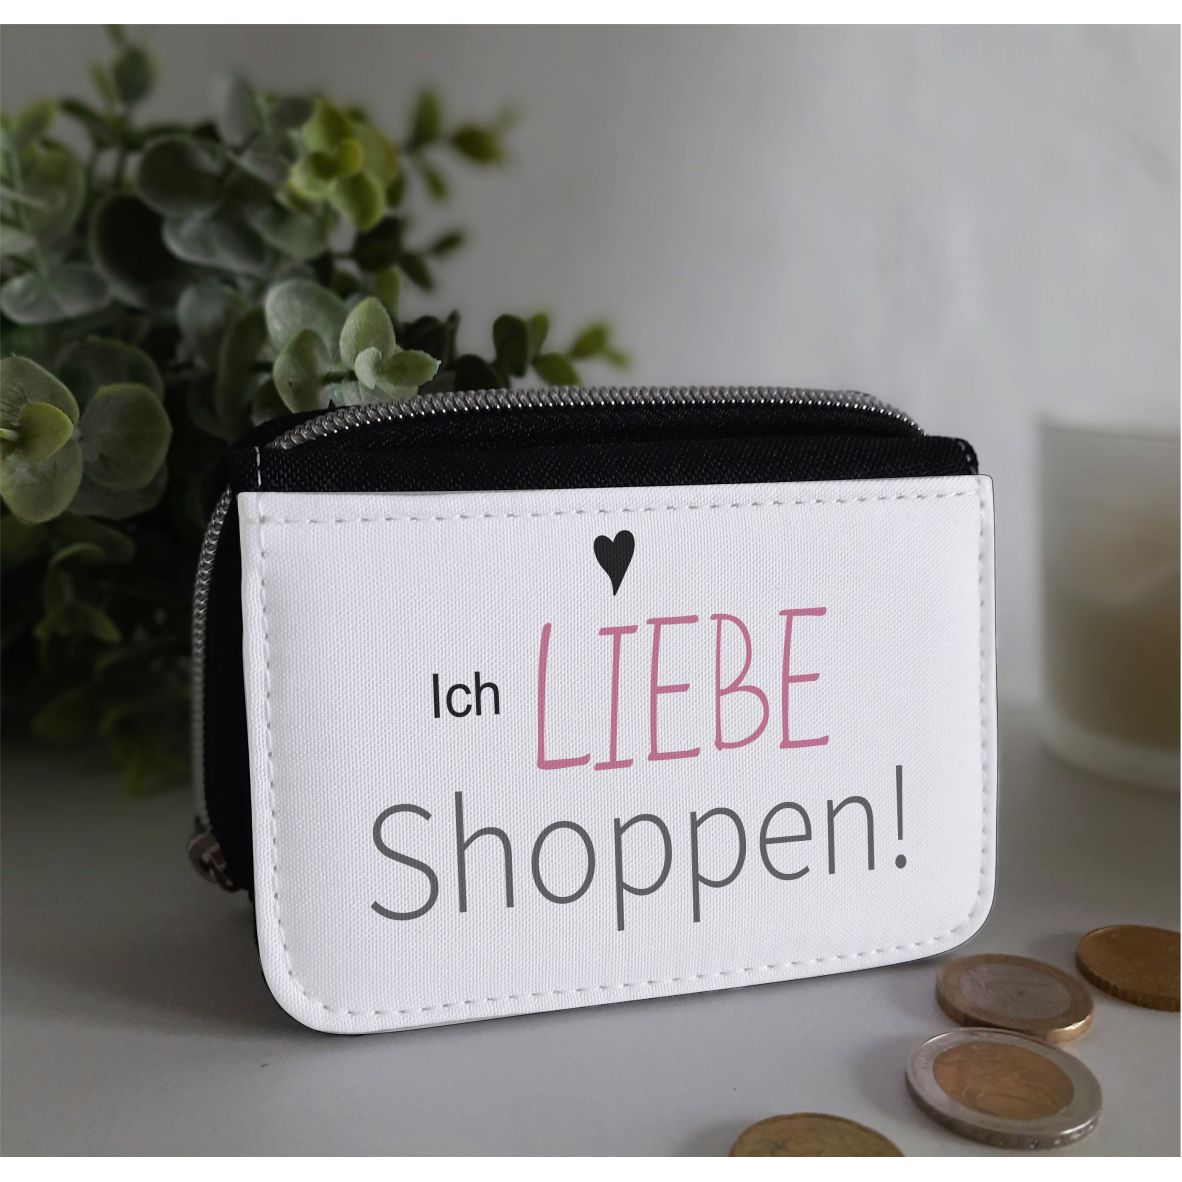 Textil Geldbörse "Ich liebe Shoppen", schwarz